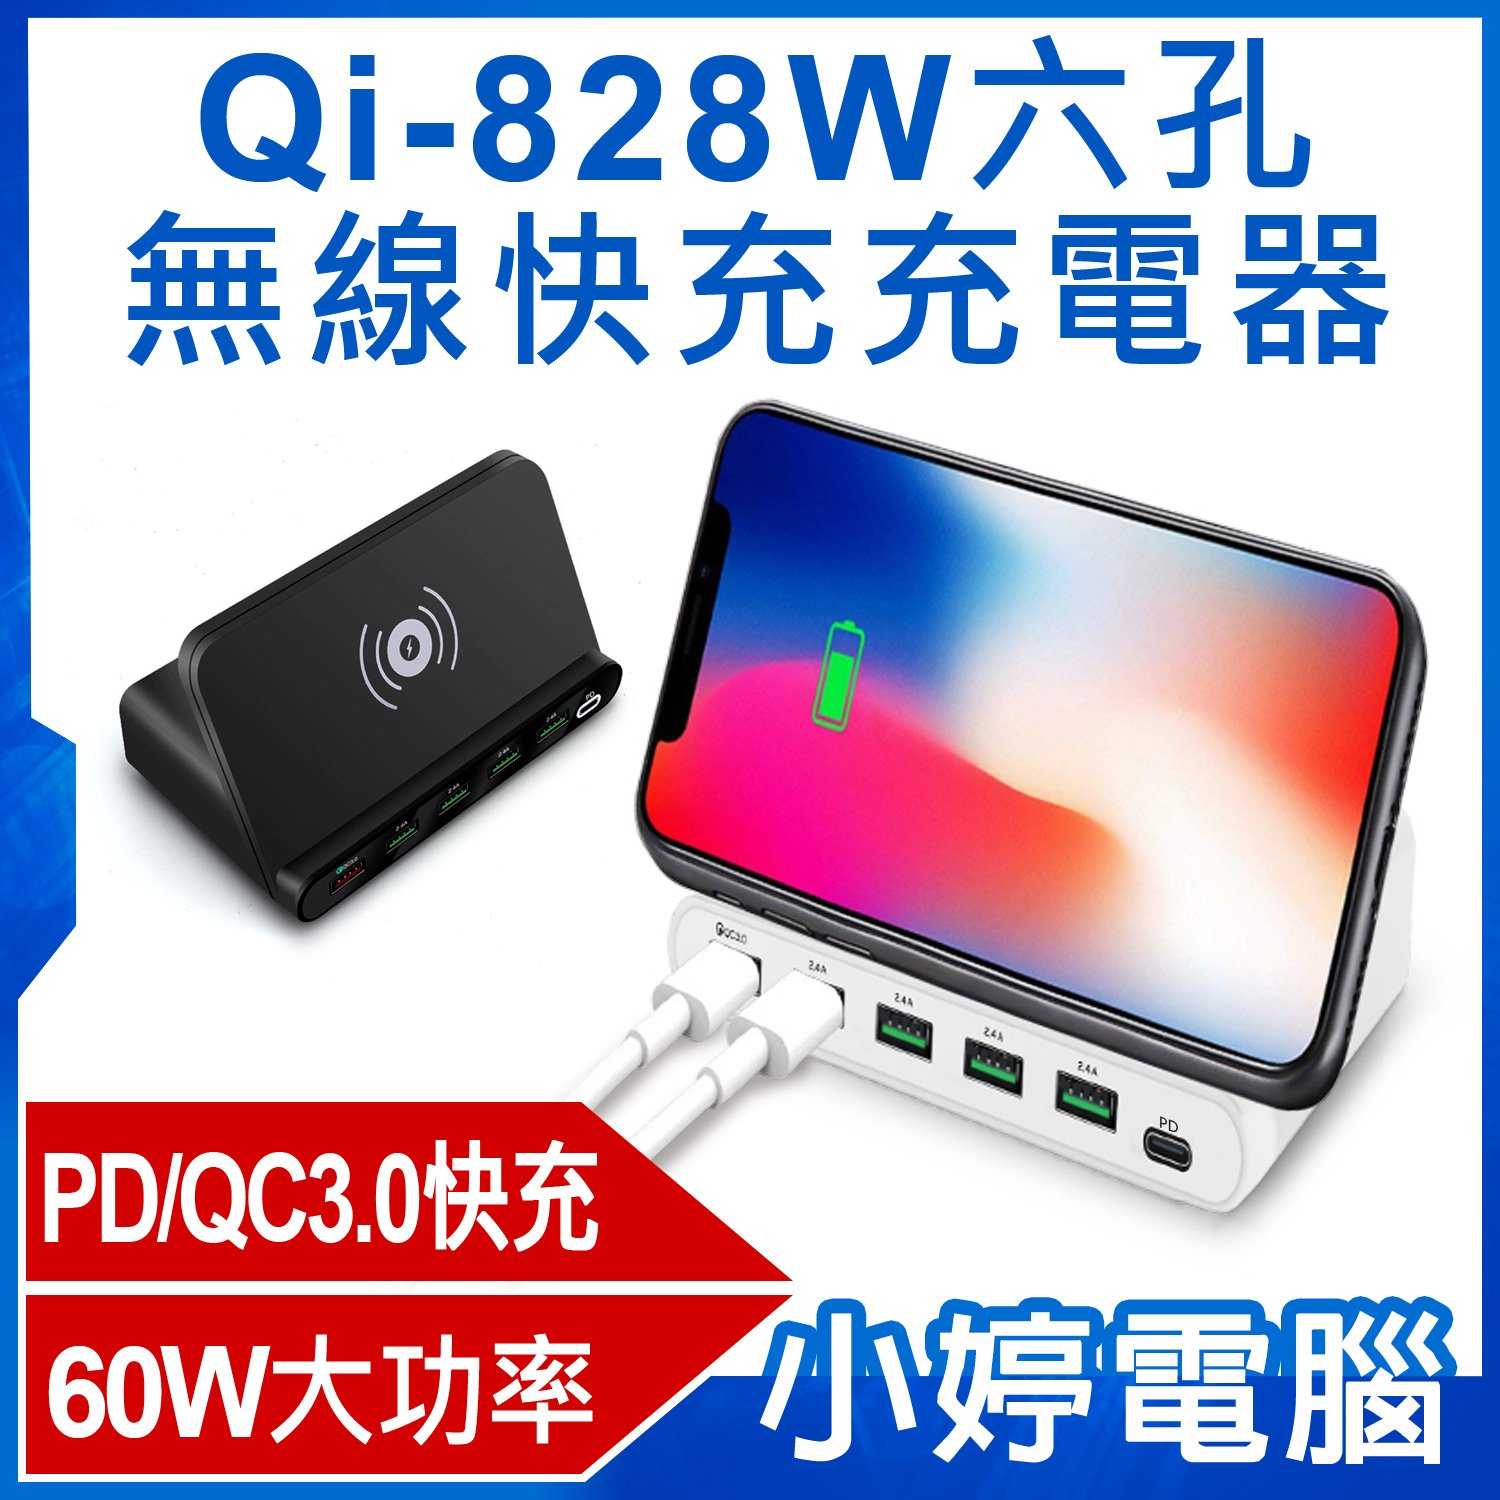 【小婷電腦】Qi-828W六孔無線快充充電器 60W大功率 QC3.0快充 AC100~240V PD